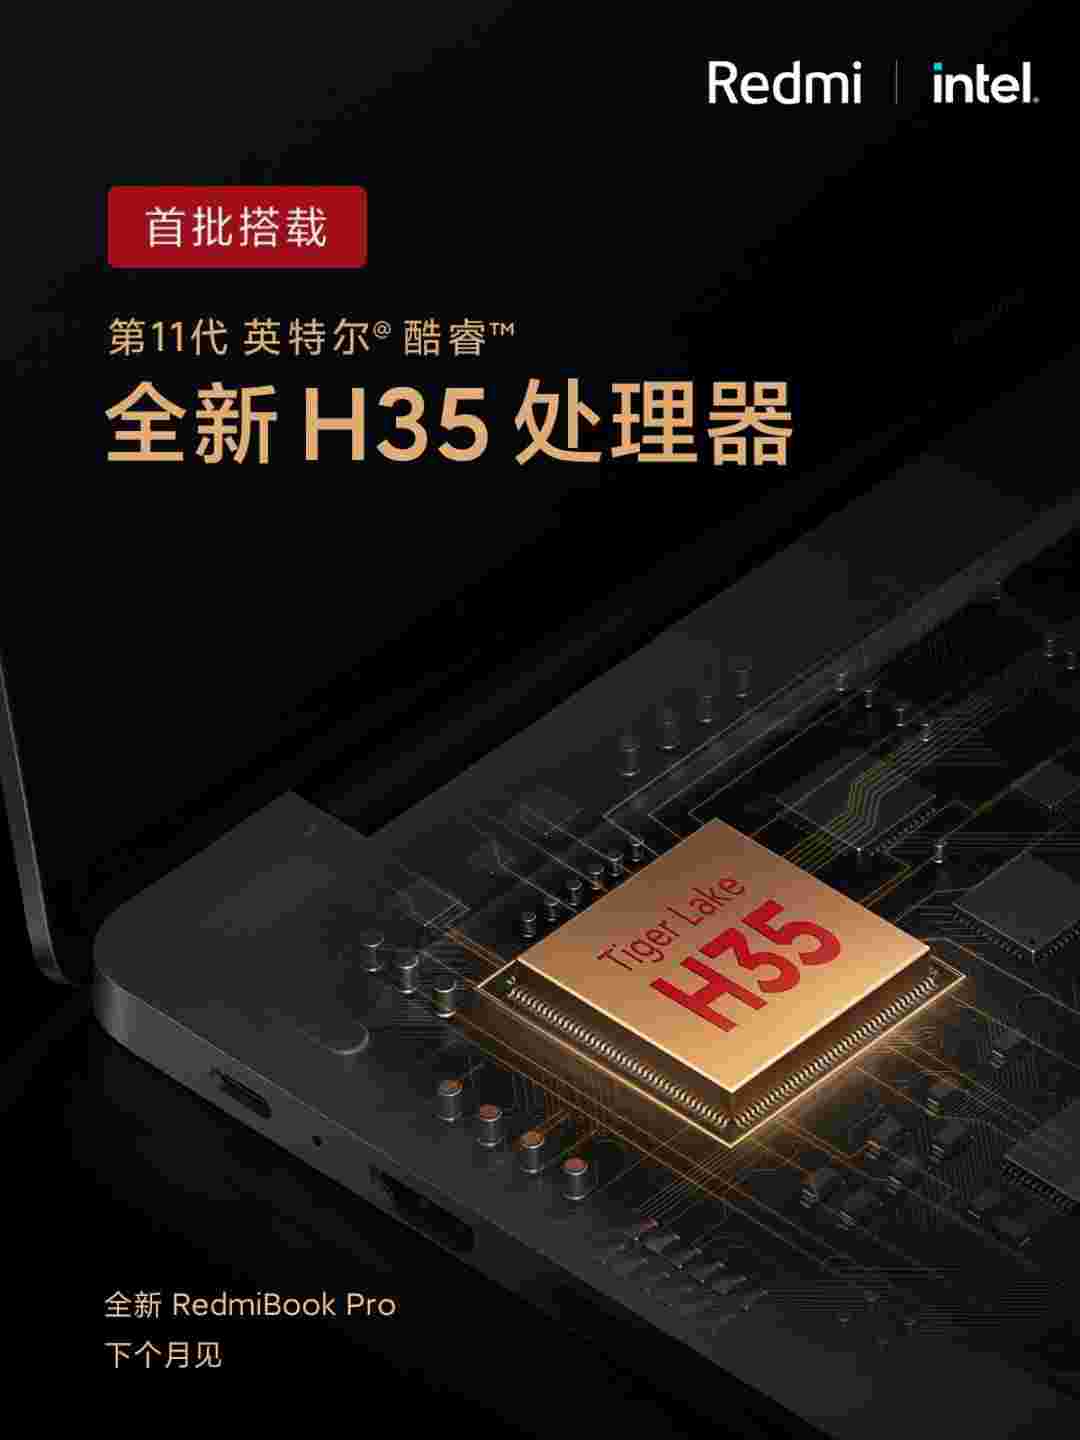 小米带新的redmibook专业版11日英特尔核心芯片组